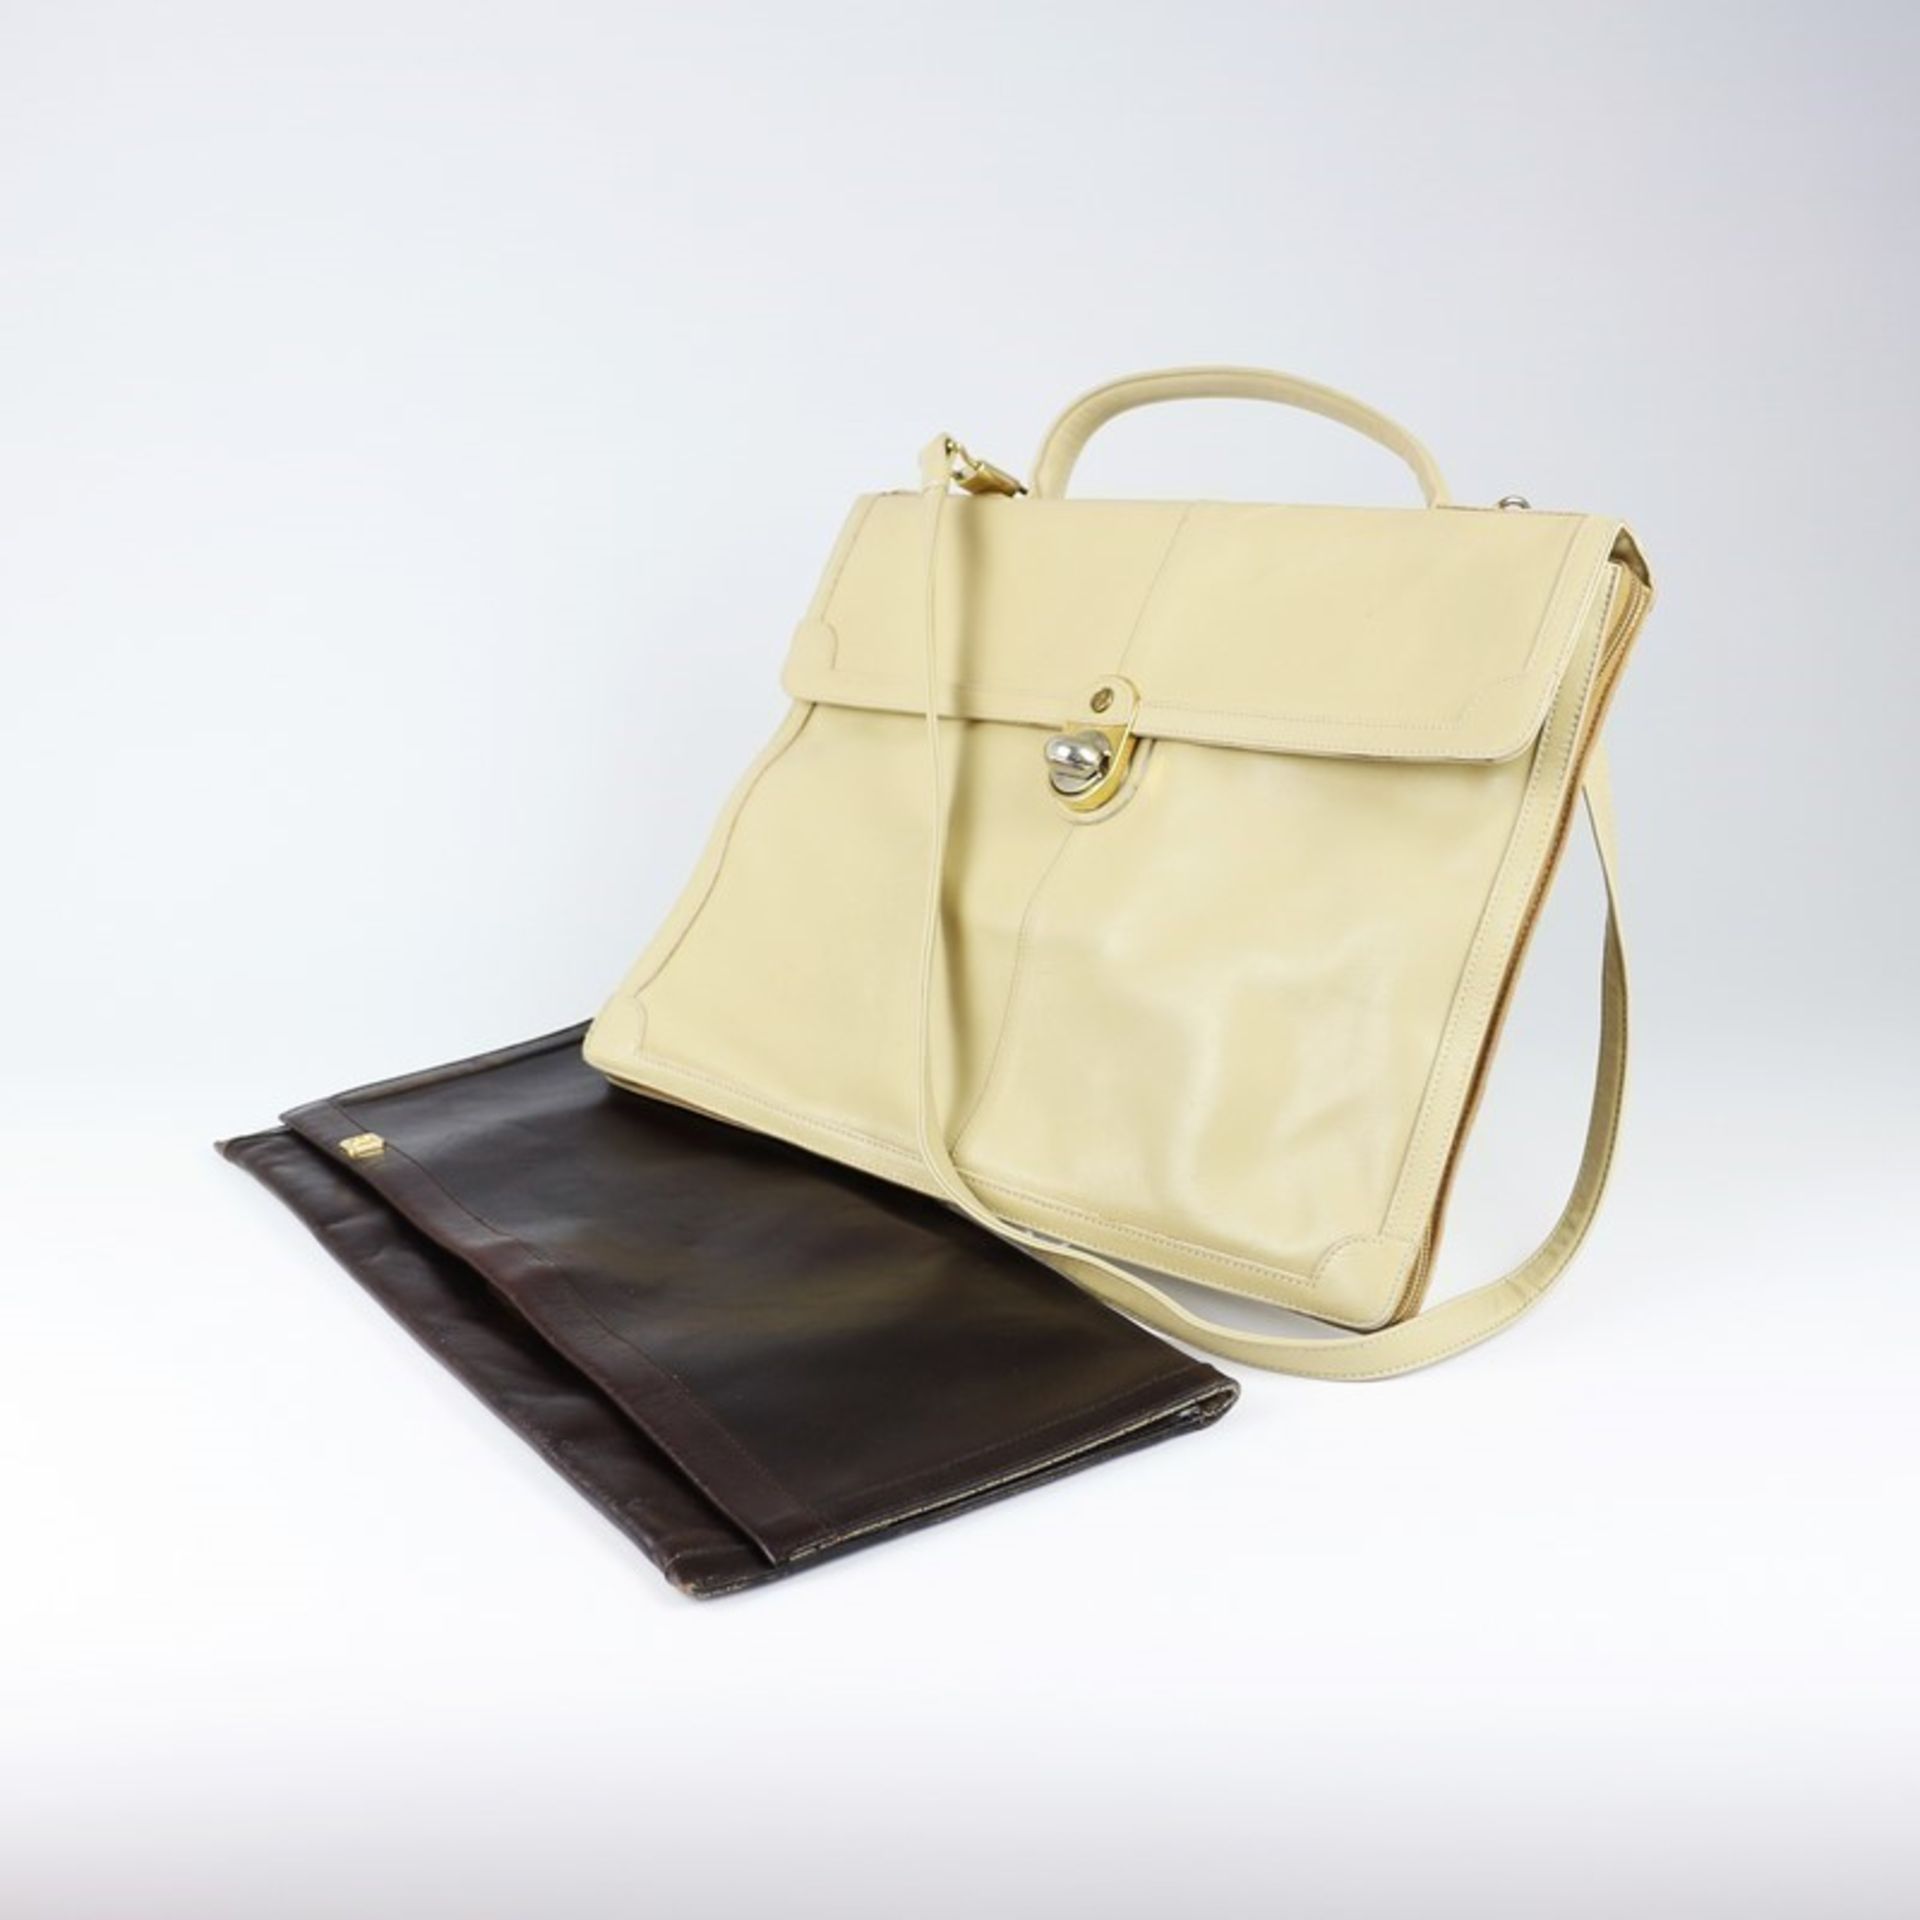 Goldpfeil - Zwei Handtaschen 1x große Clutch, dunkelbraunes Leder, 1x kleine Aktenhandtasche, beiges